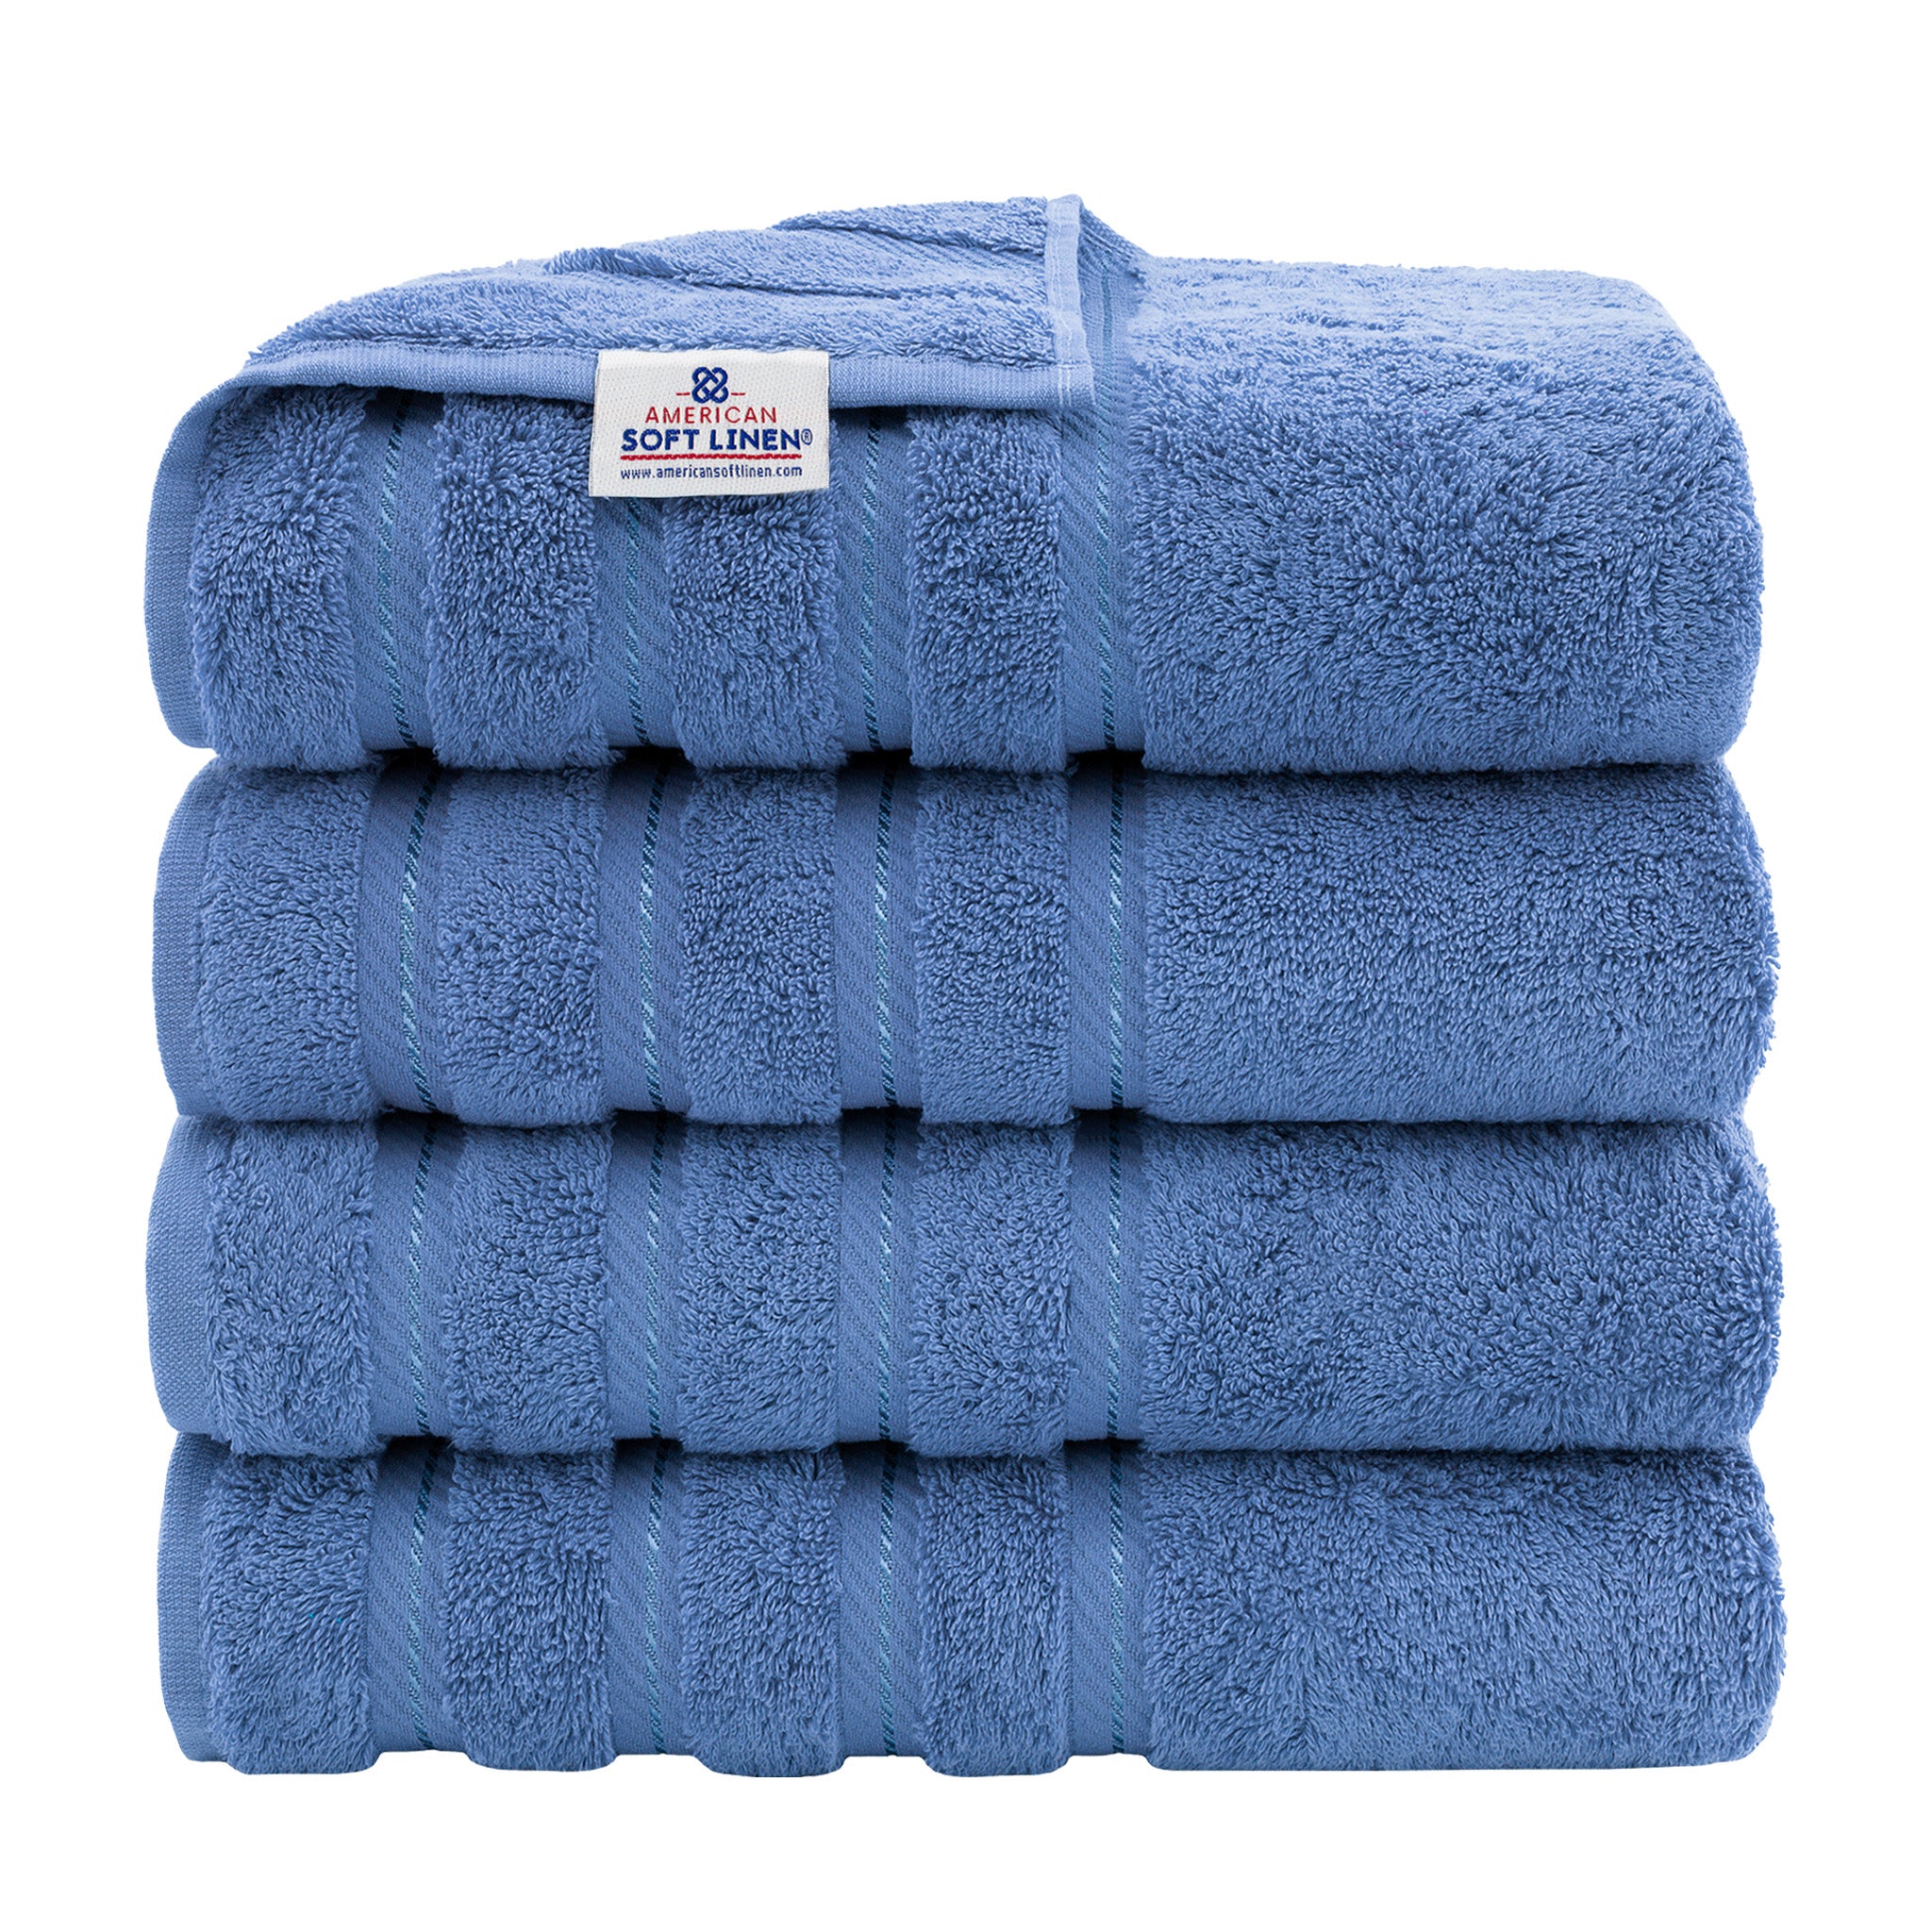 American Soft Linen 100% Turkish Cotton 4 Pack Bath Towel Set electric-blue-1